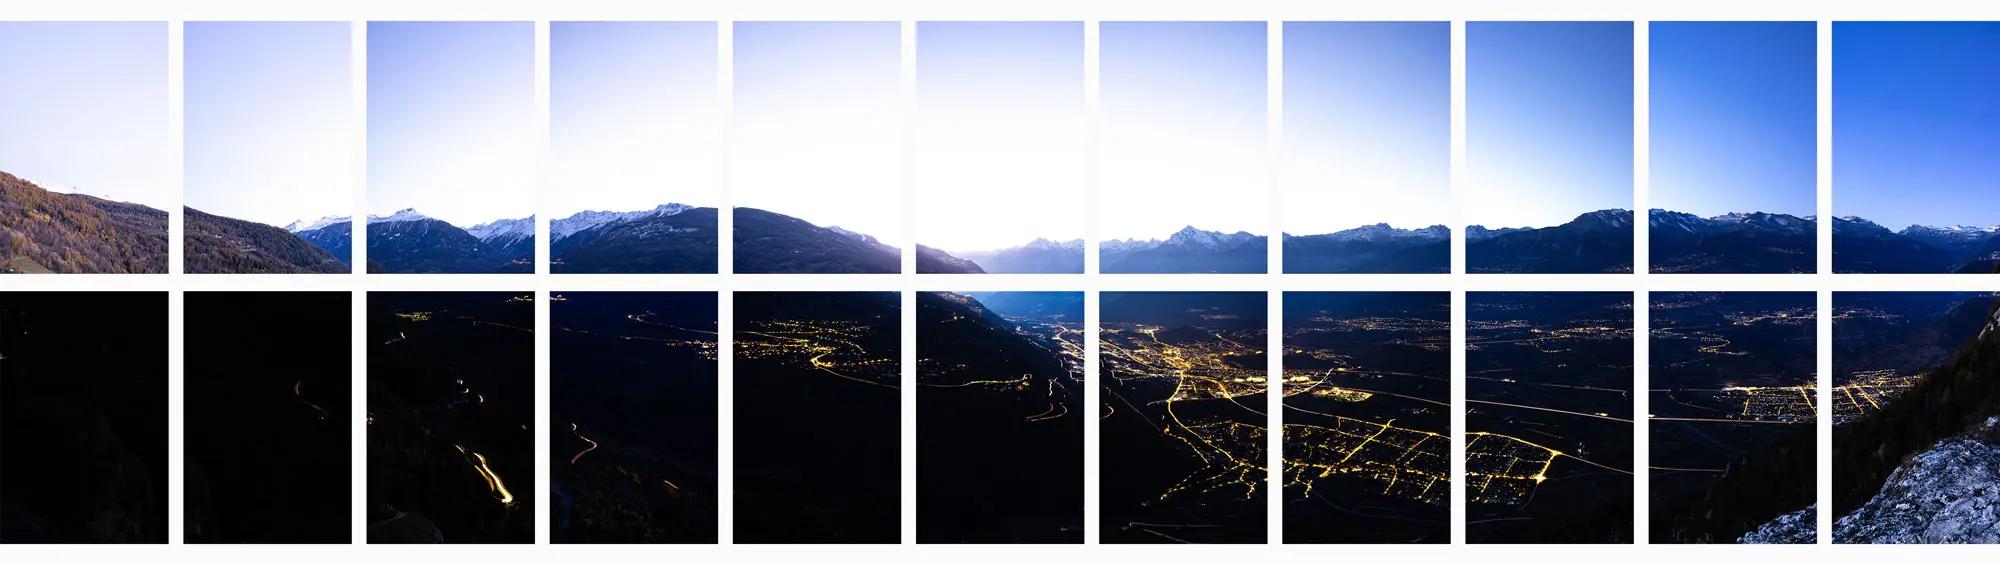 Unbearbeitete Einzelbilder eines mehrzeiligen Panoramas (2 x 11 Bilder) aus dem Rhonetal in der Schweiz